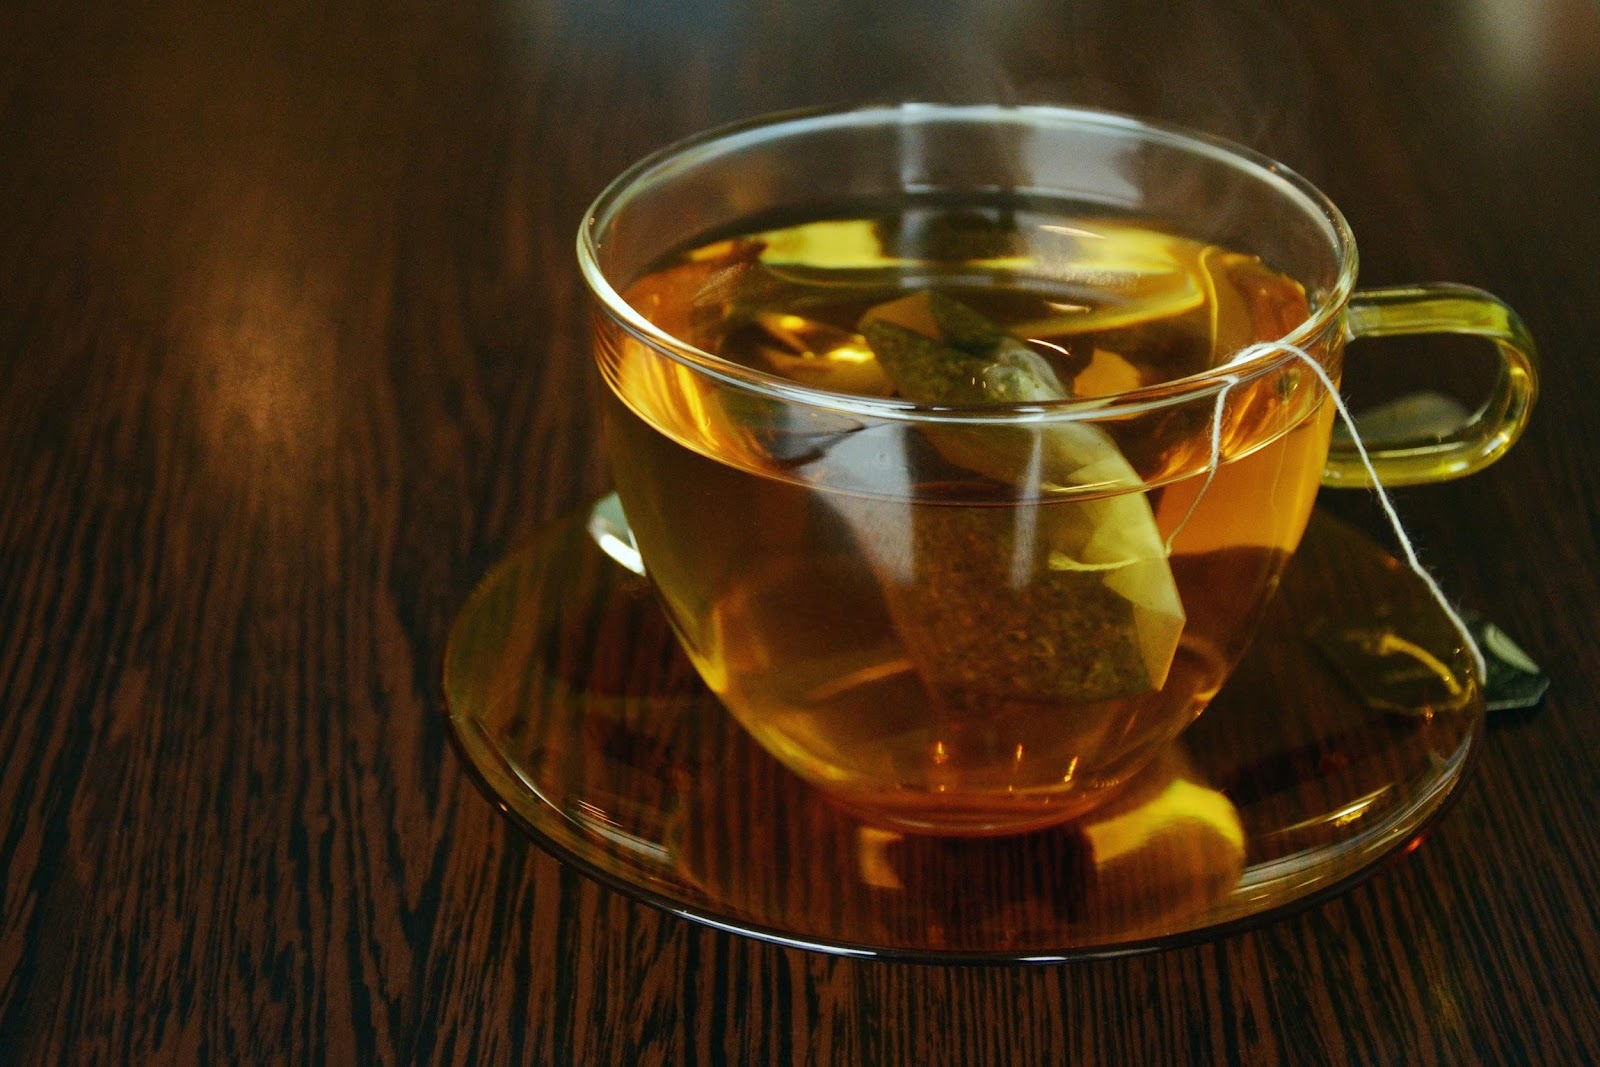 ชาเขียวเพื่อผิวสวยทำไมต้องชาเขียวประโยชน์มากมายของชาเขียว - ประโยชน์กับผิว - D.I.Y เพื่อผิวสวย18